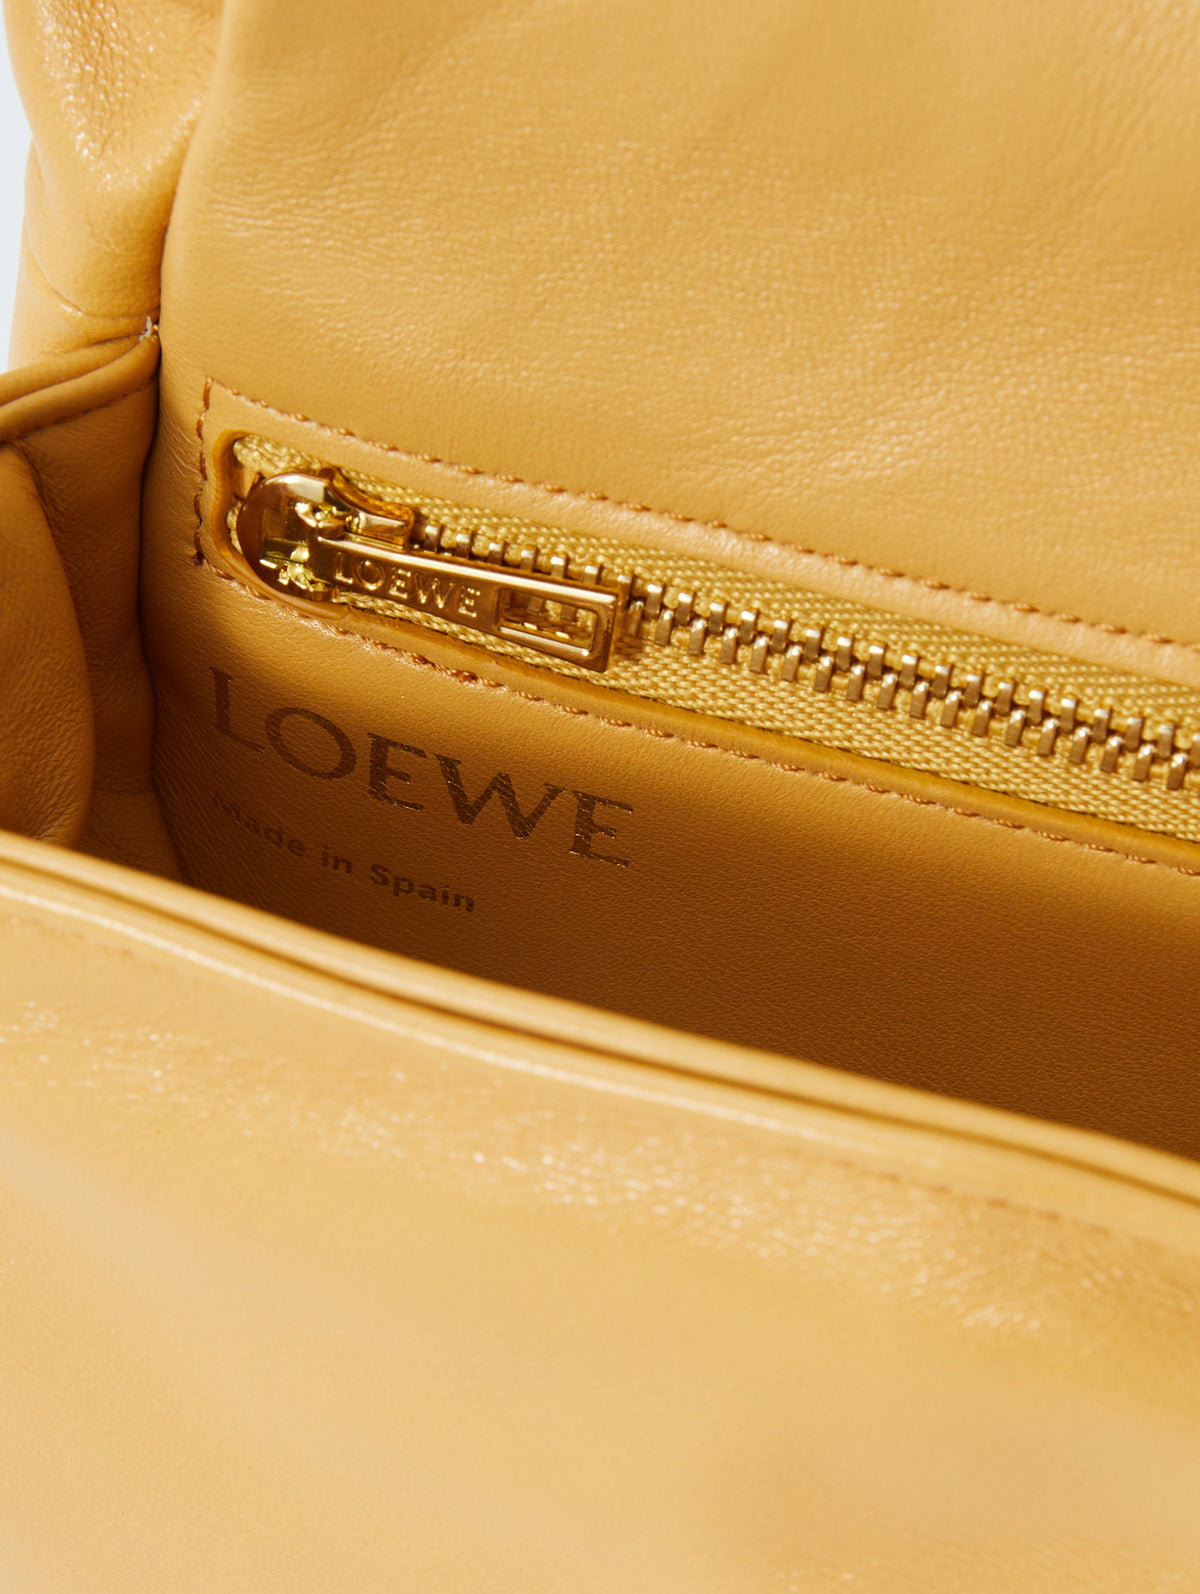 Buy Loewe Mini Puffer Goya Bag 'Caribbean Blue' - A896W56X03 8026